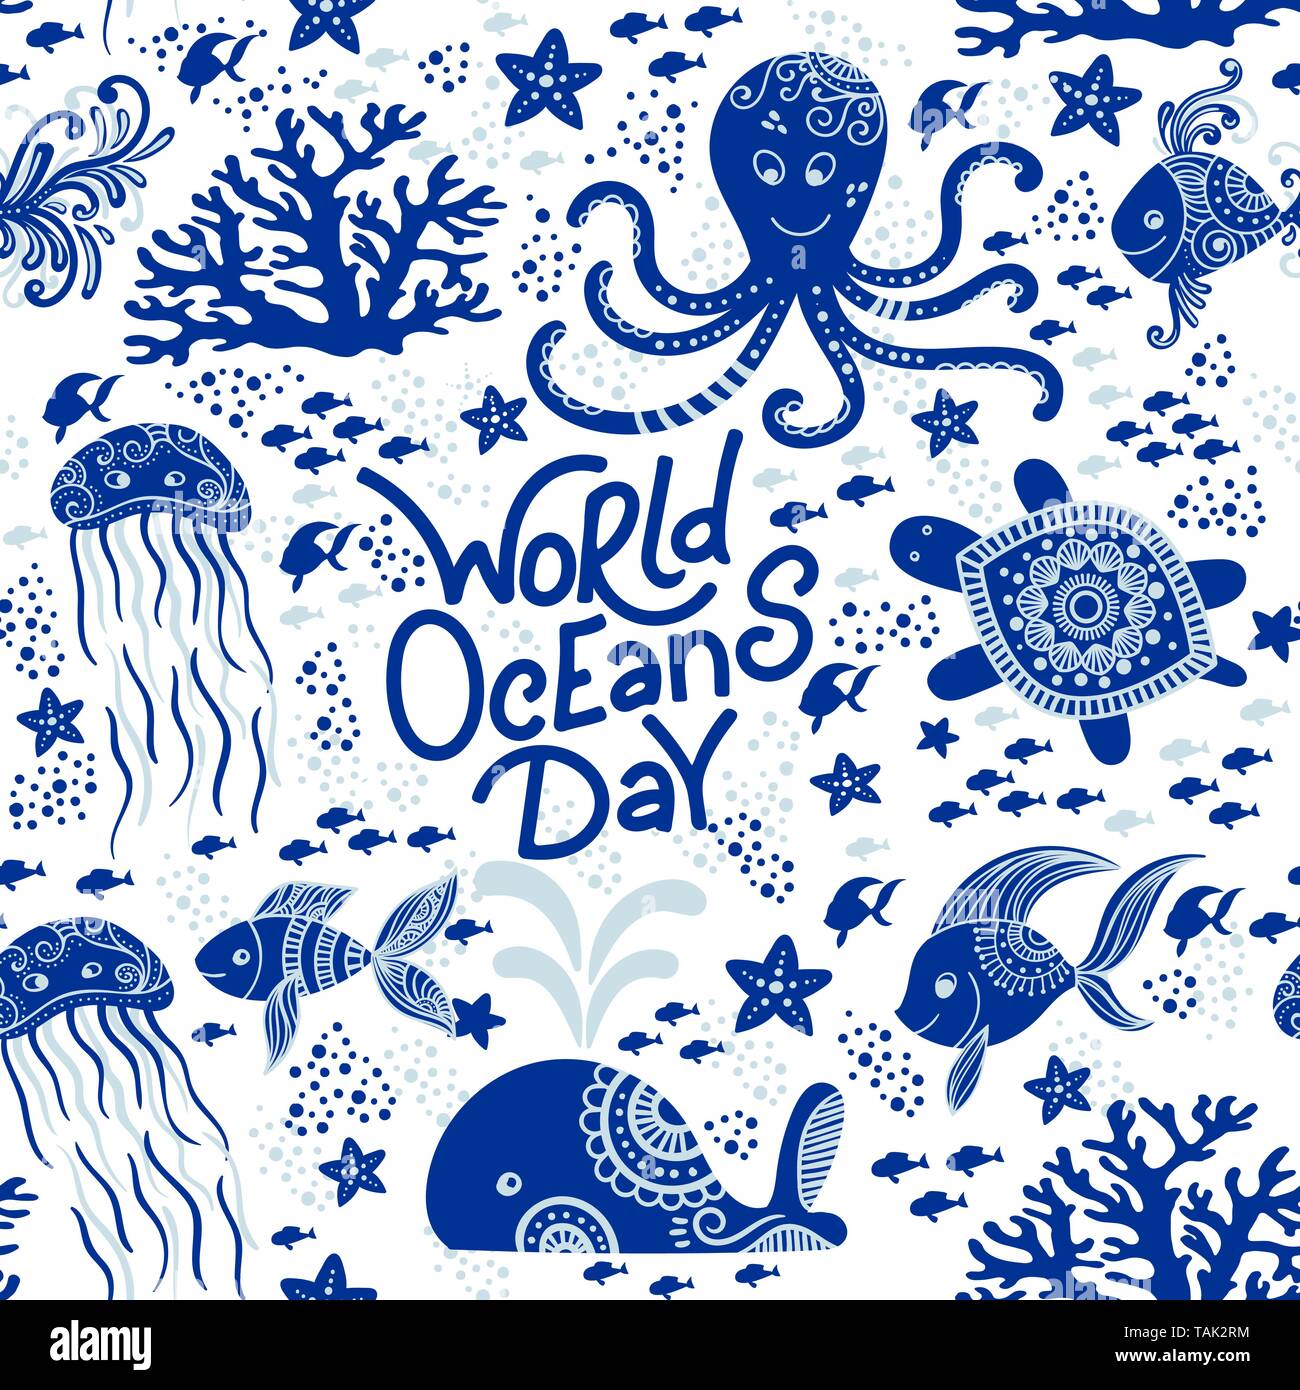 World Ocean day Hand gezeichnet Schriftzug und Unterwasser Tiere. Quallen, Wale, Octopus, Seesterne und Schildkröten. Nahtlose Muster Hintergrund. Vector Illustration doodle Stil. Ozean Konzept Schützen Stock Vektor